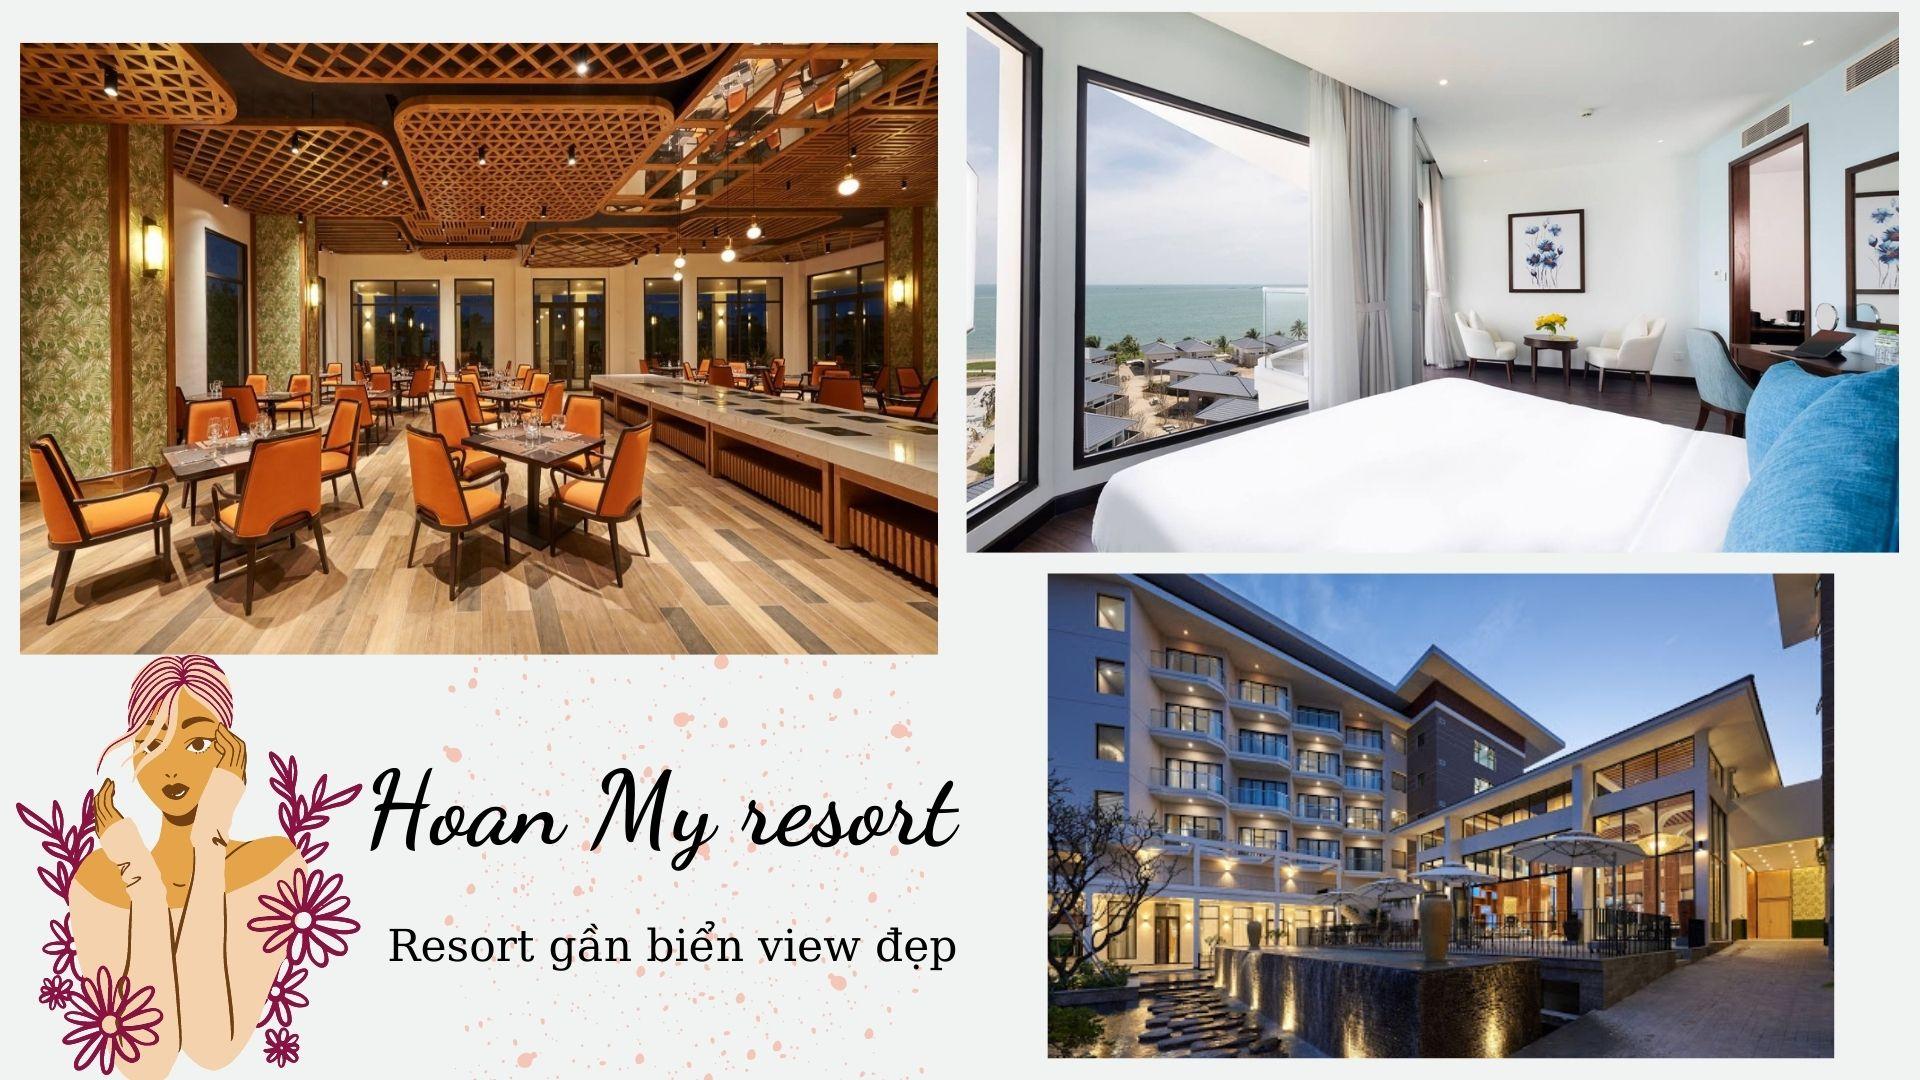 17 Resort Ninh Thuận Phan Rang giá rẻ đẹp gần biển Ninh Chữ có hồ bơi